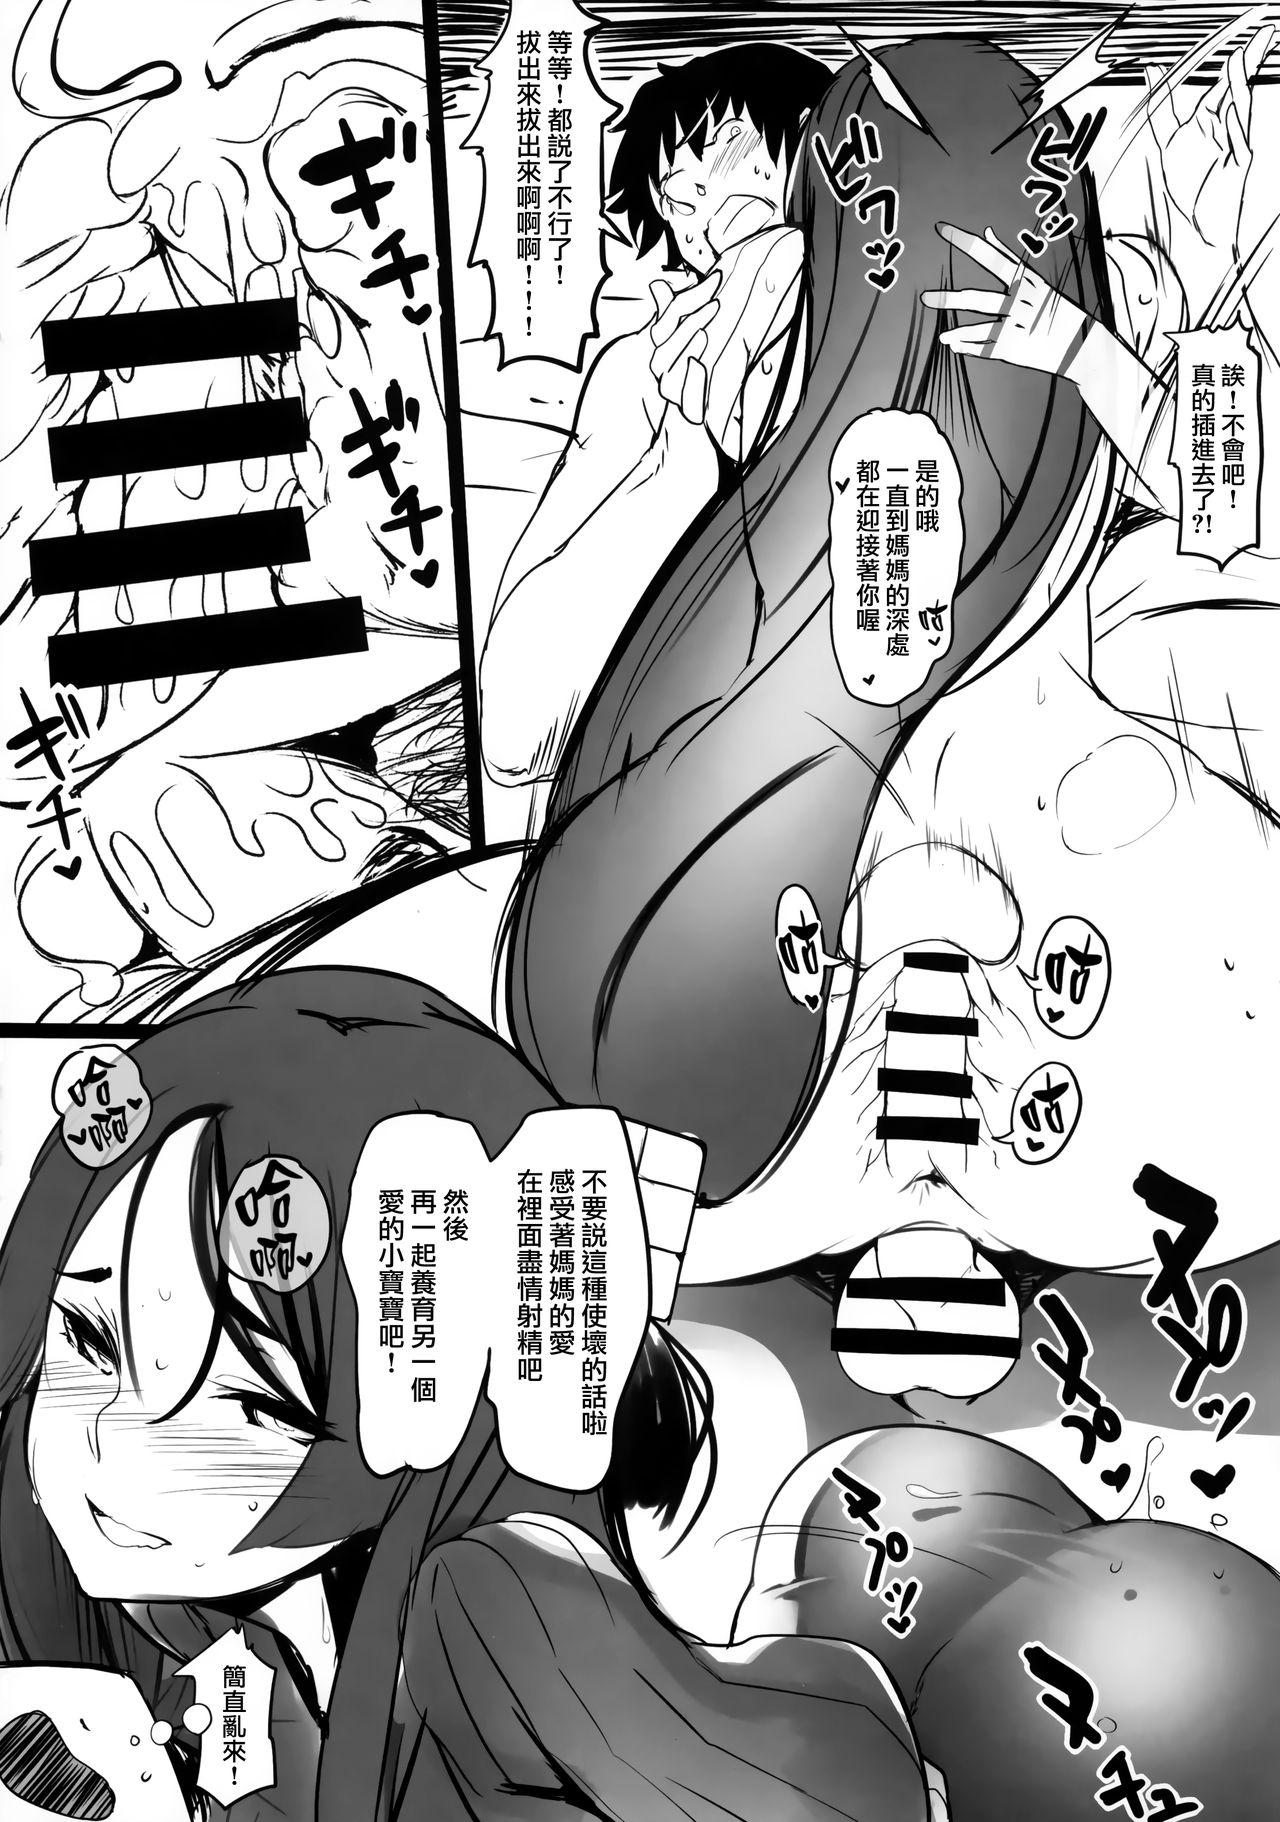 Ftv Girls Oya no Kokoro Ko Shirazu - Fate grand order Voyeur - Page 6